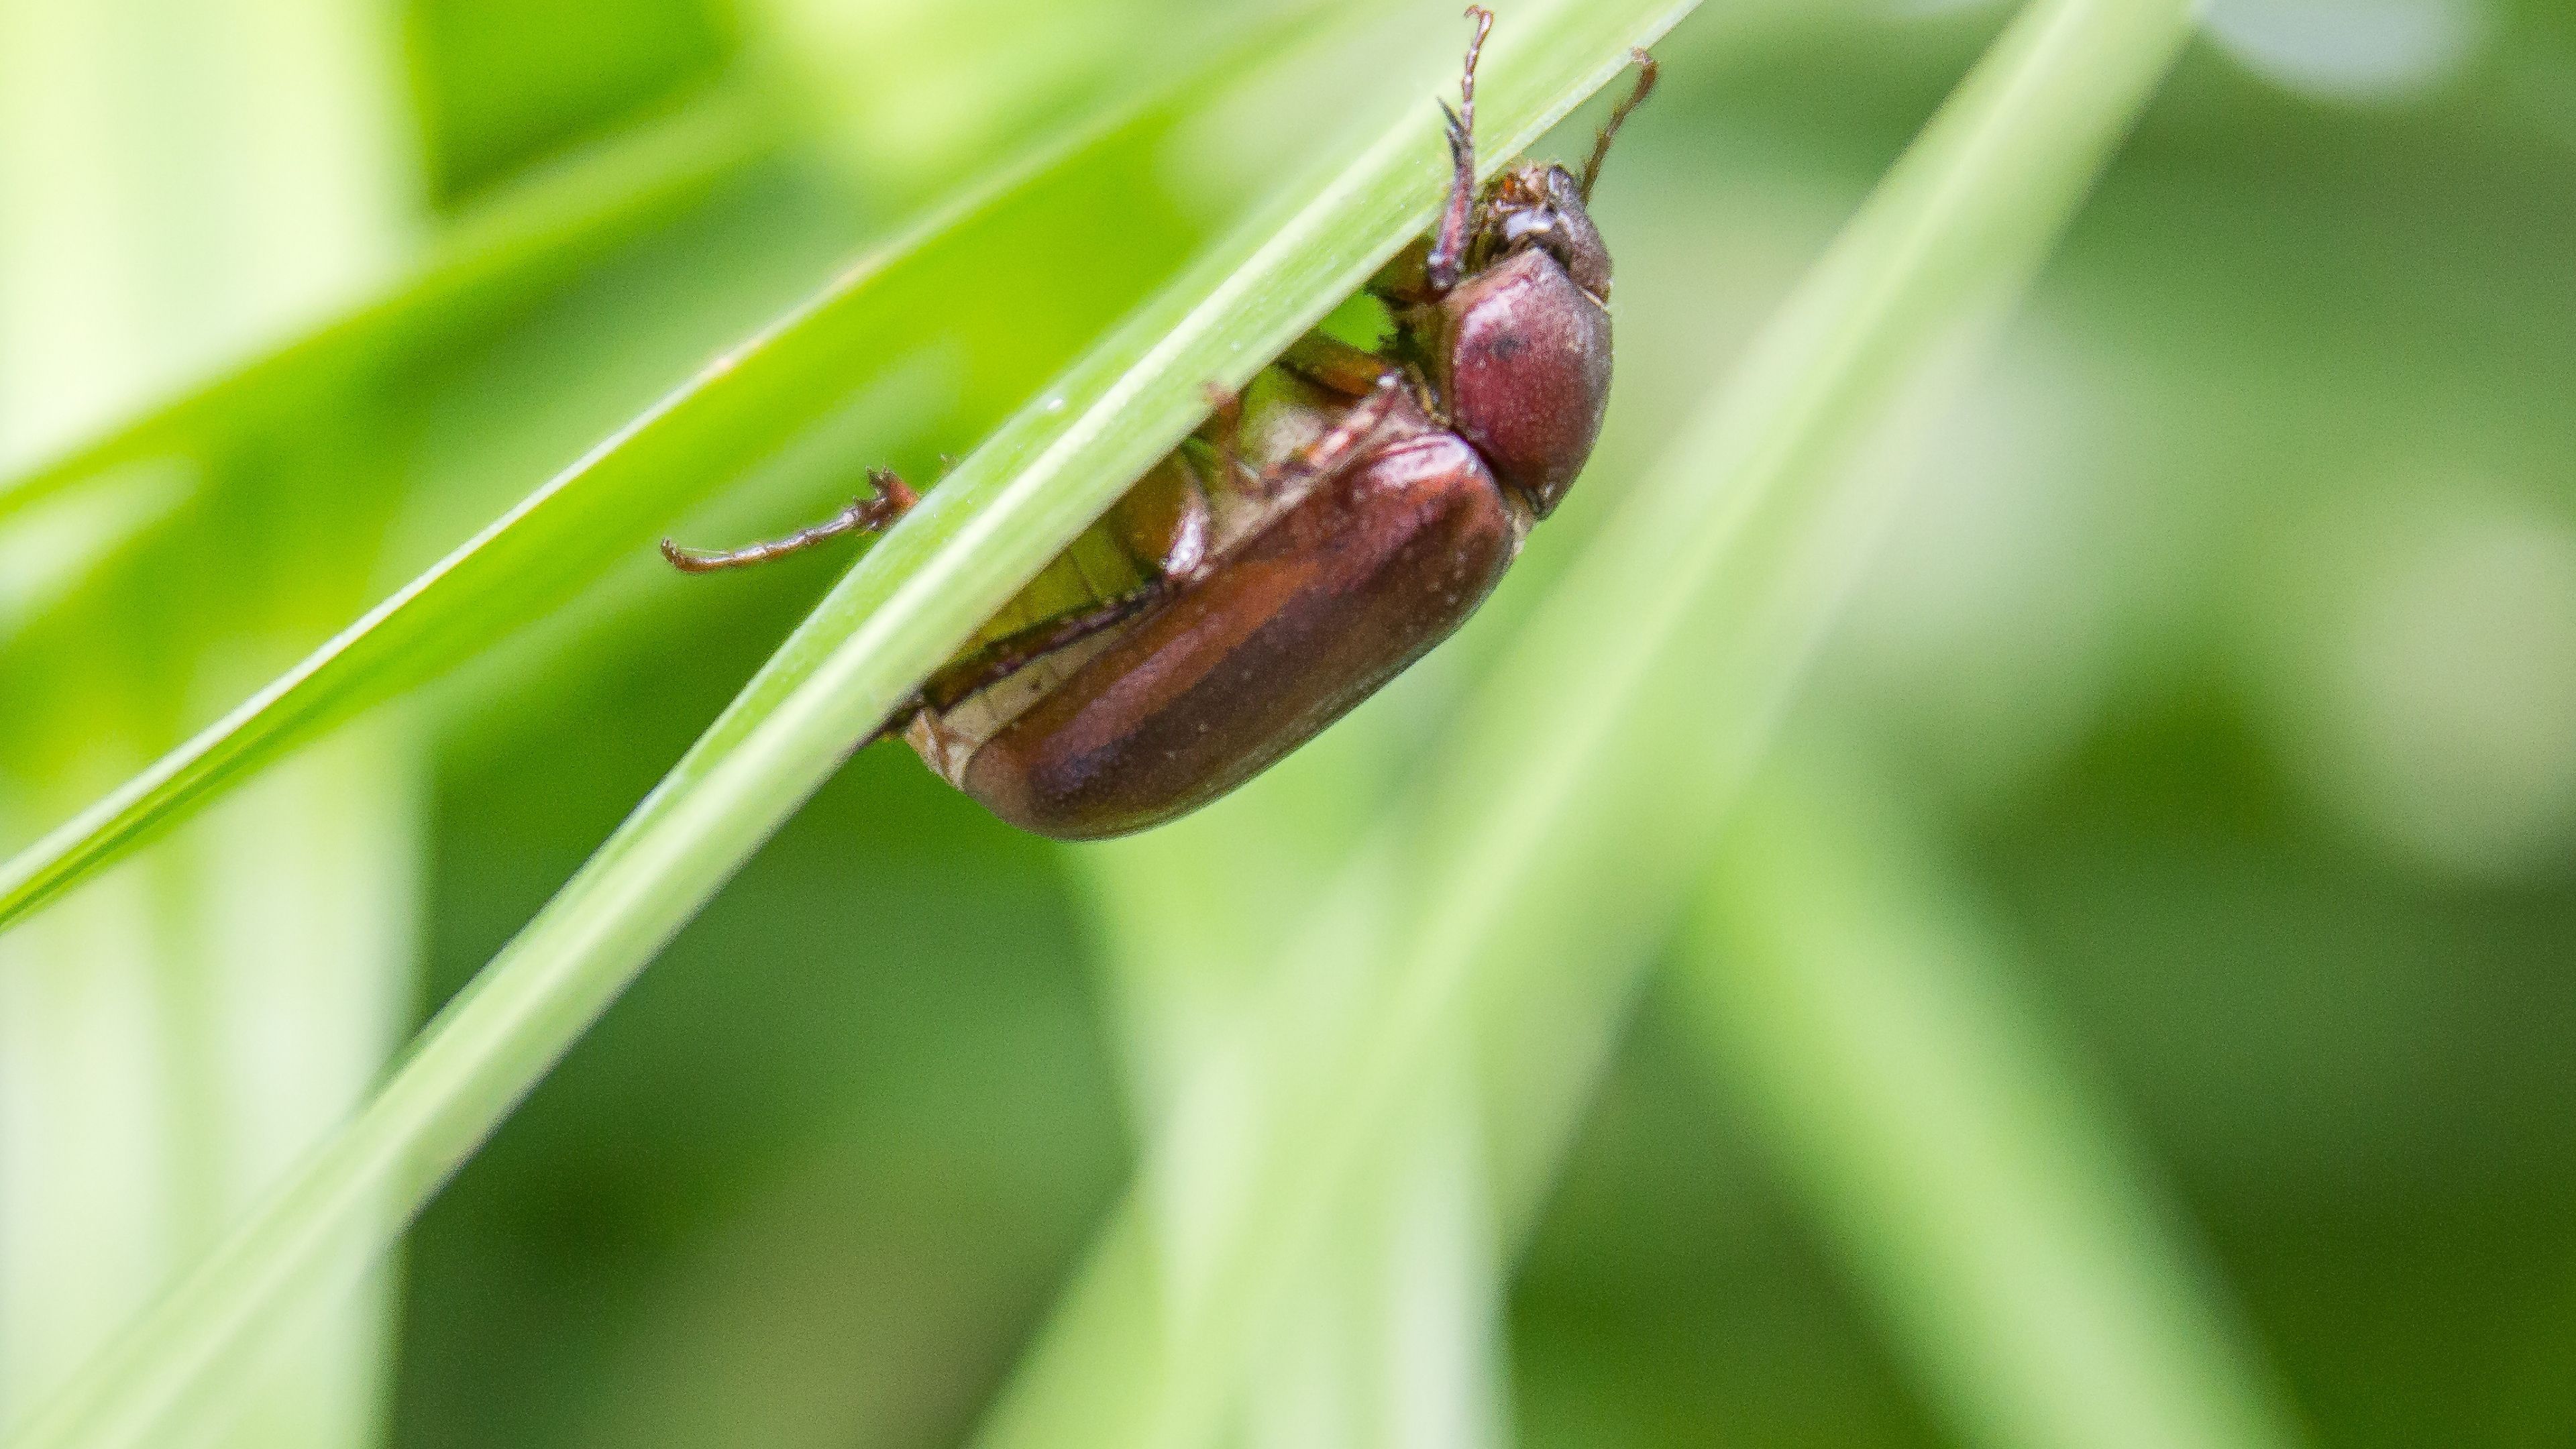 May/June Beetle